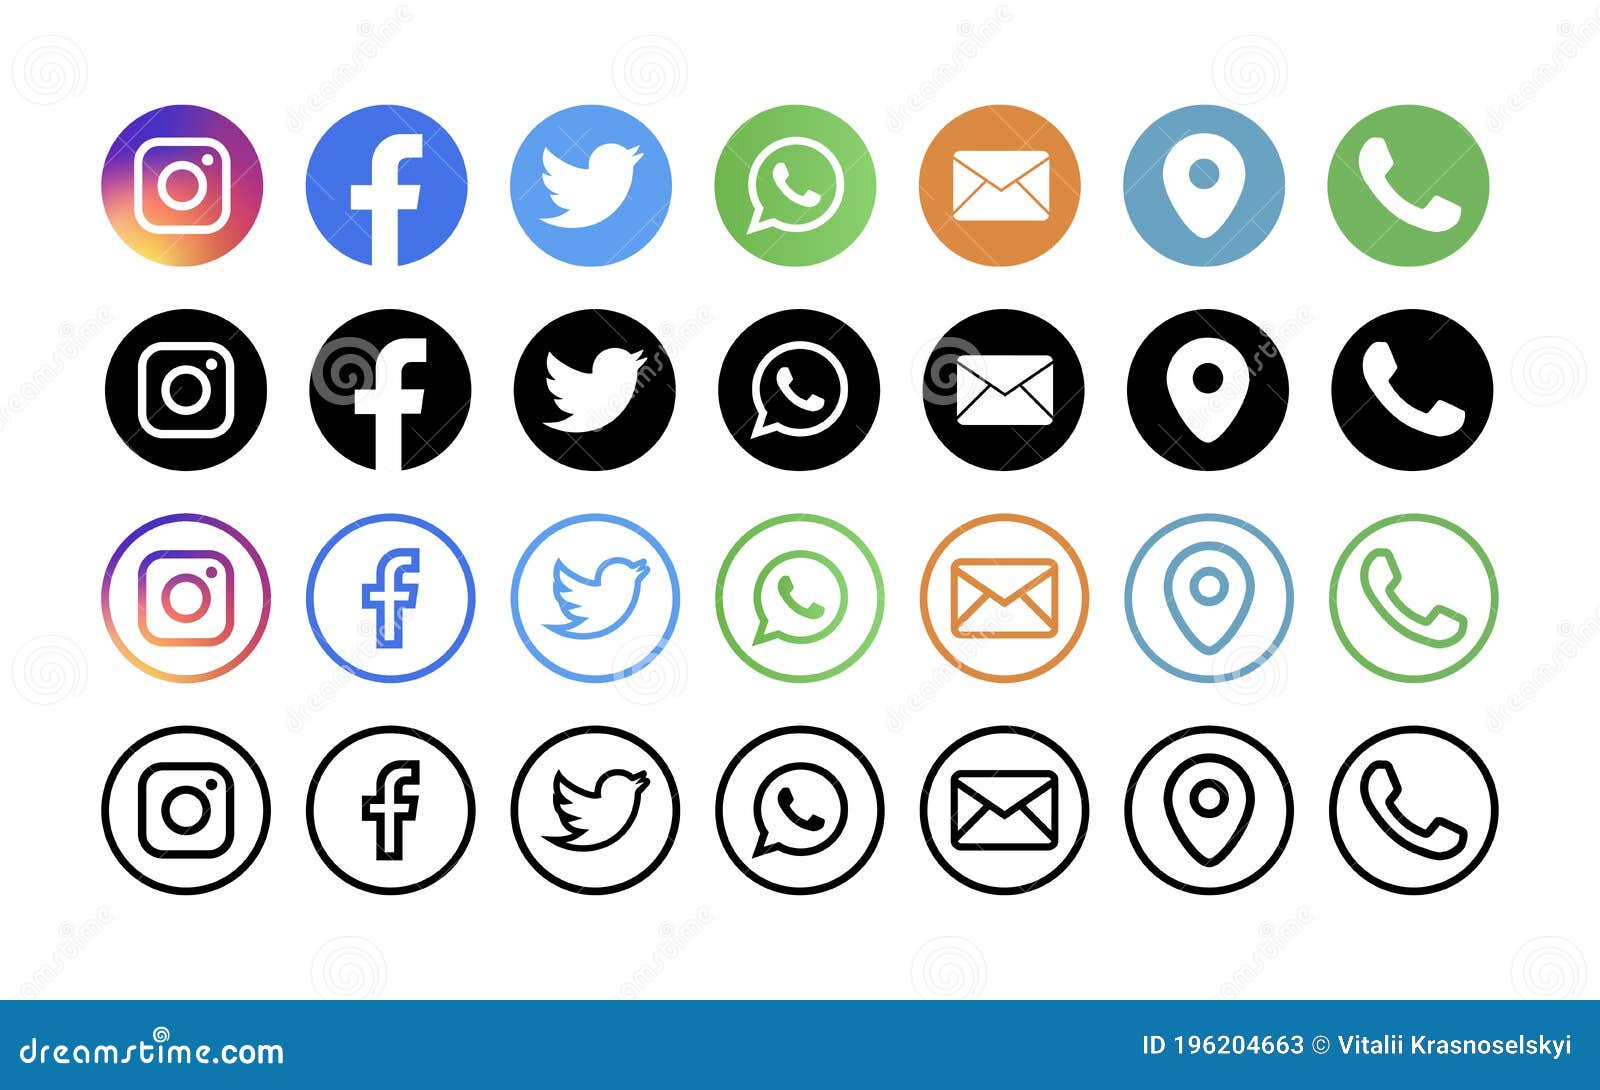 Social media 2024: Mạng xã hội là một phần không thể thiếu trong cuộc sống của chúng ta. Trong tương lai, các nền tảng xã hội sẽ tiếp tục phát triển và mở rộng quy mô. Chúng ta sẽ có nhiều lựa chọn hơn để tương tác và kết nối với những người khác, đồng thời cũng sẽ có nhiều phương tiện để chia sẻ nội dung và tạo ra sự lan tỏa.